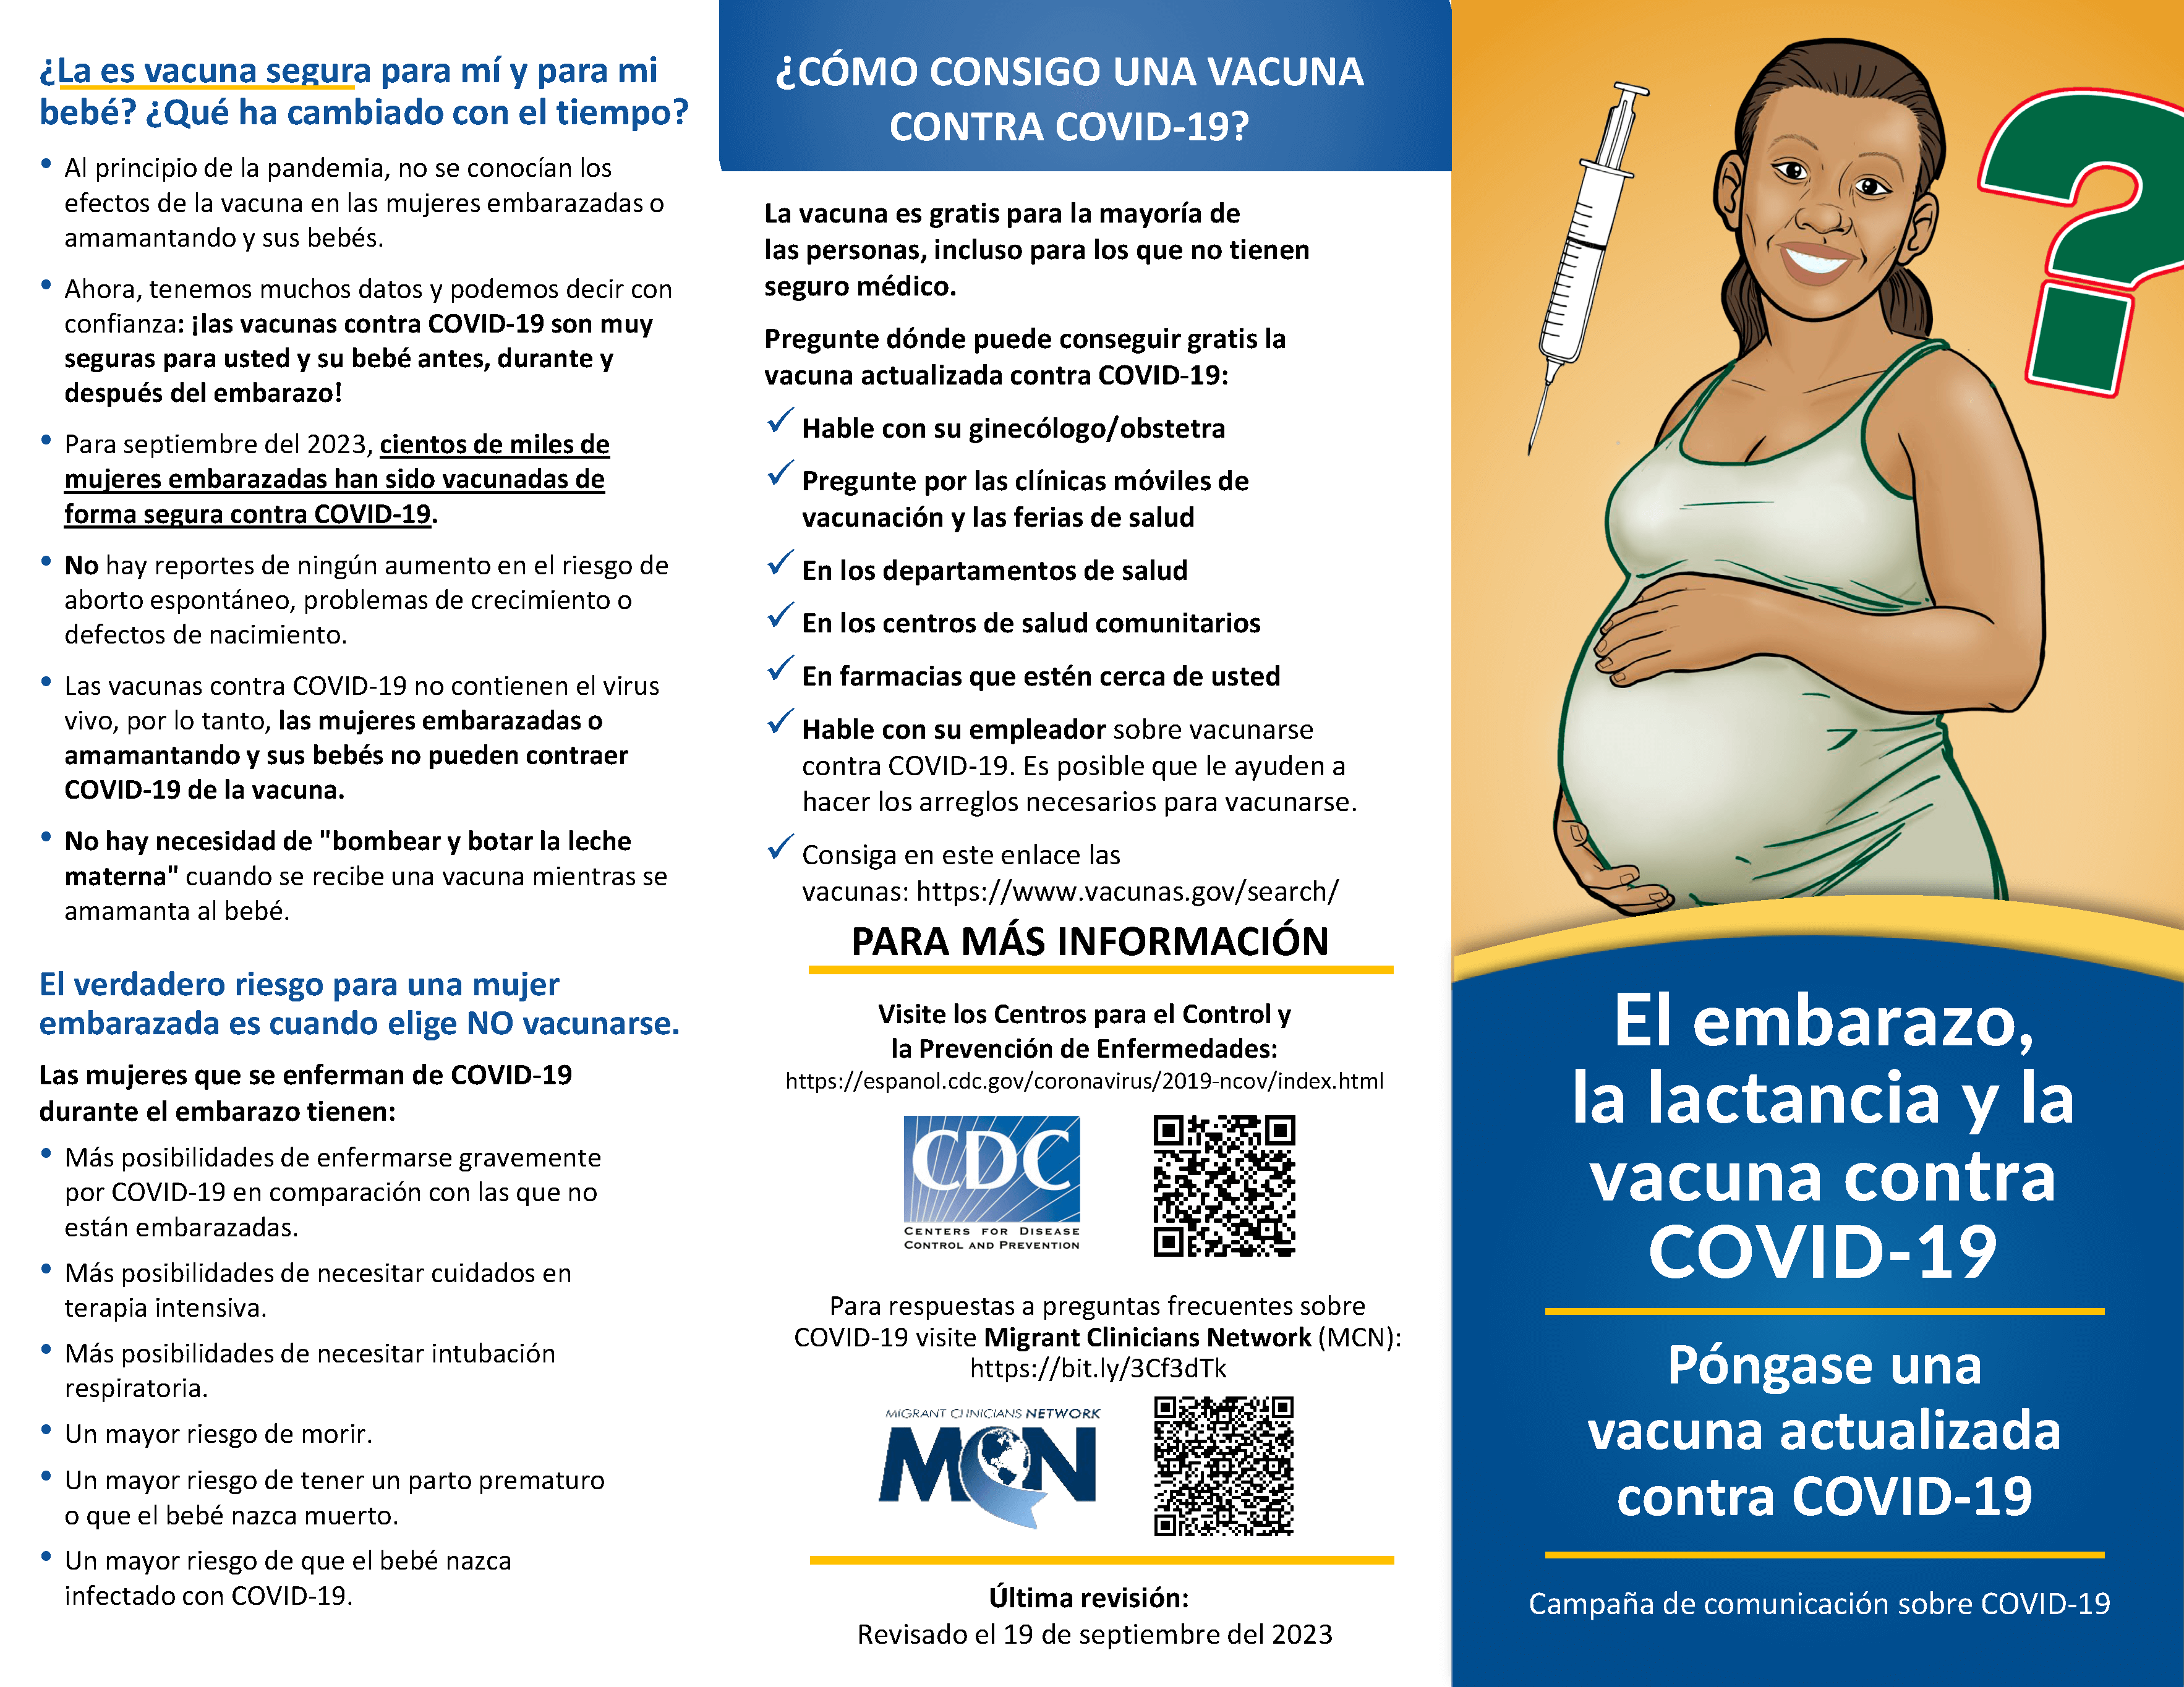 El embarazo y la vacuna contra COVID-19 - tríptico